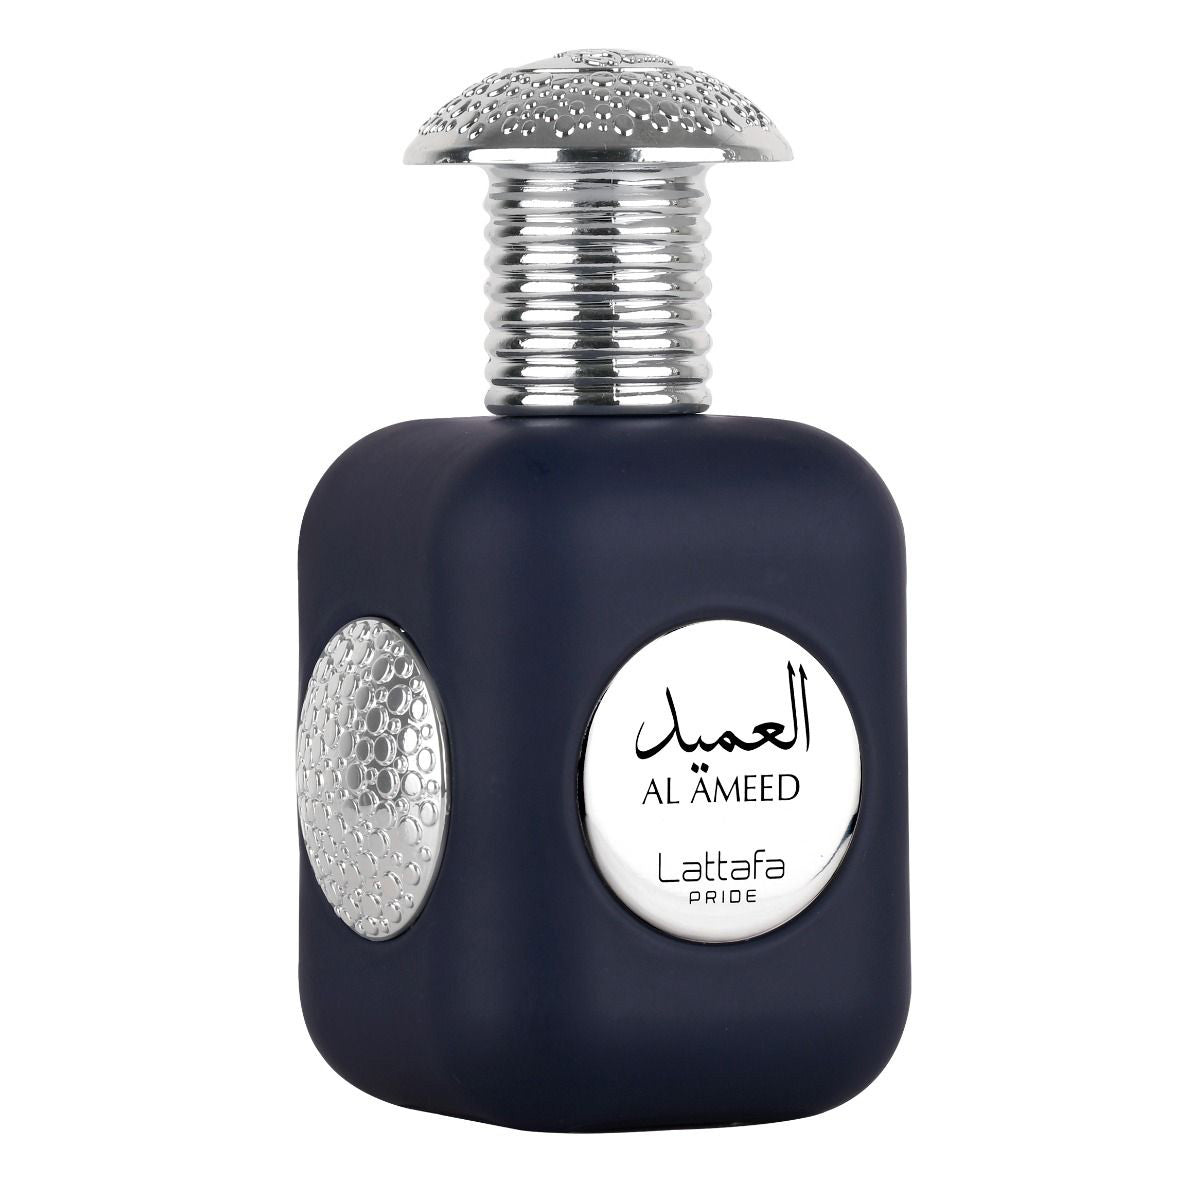 Al Ameed Eau De Parfum 100ml Lattafa Pride-Perfume Heaven